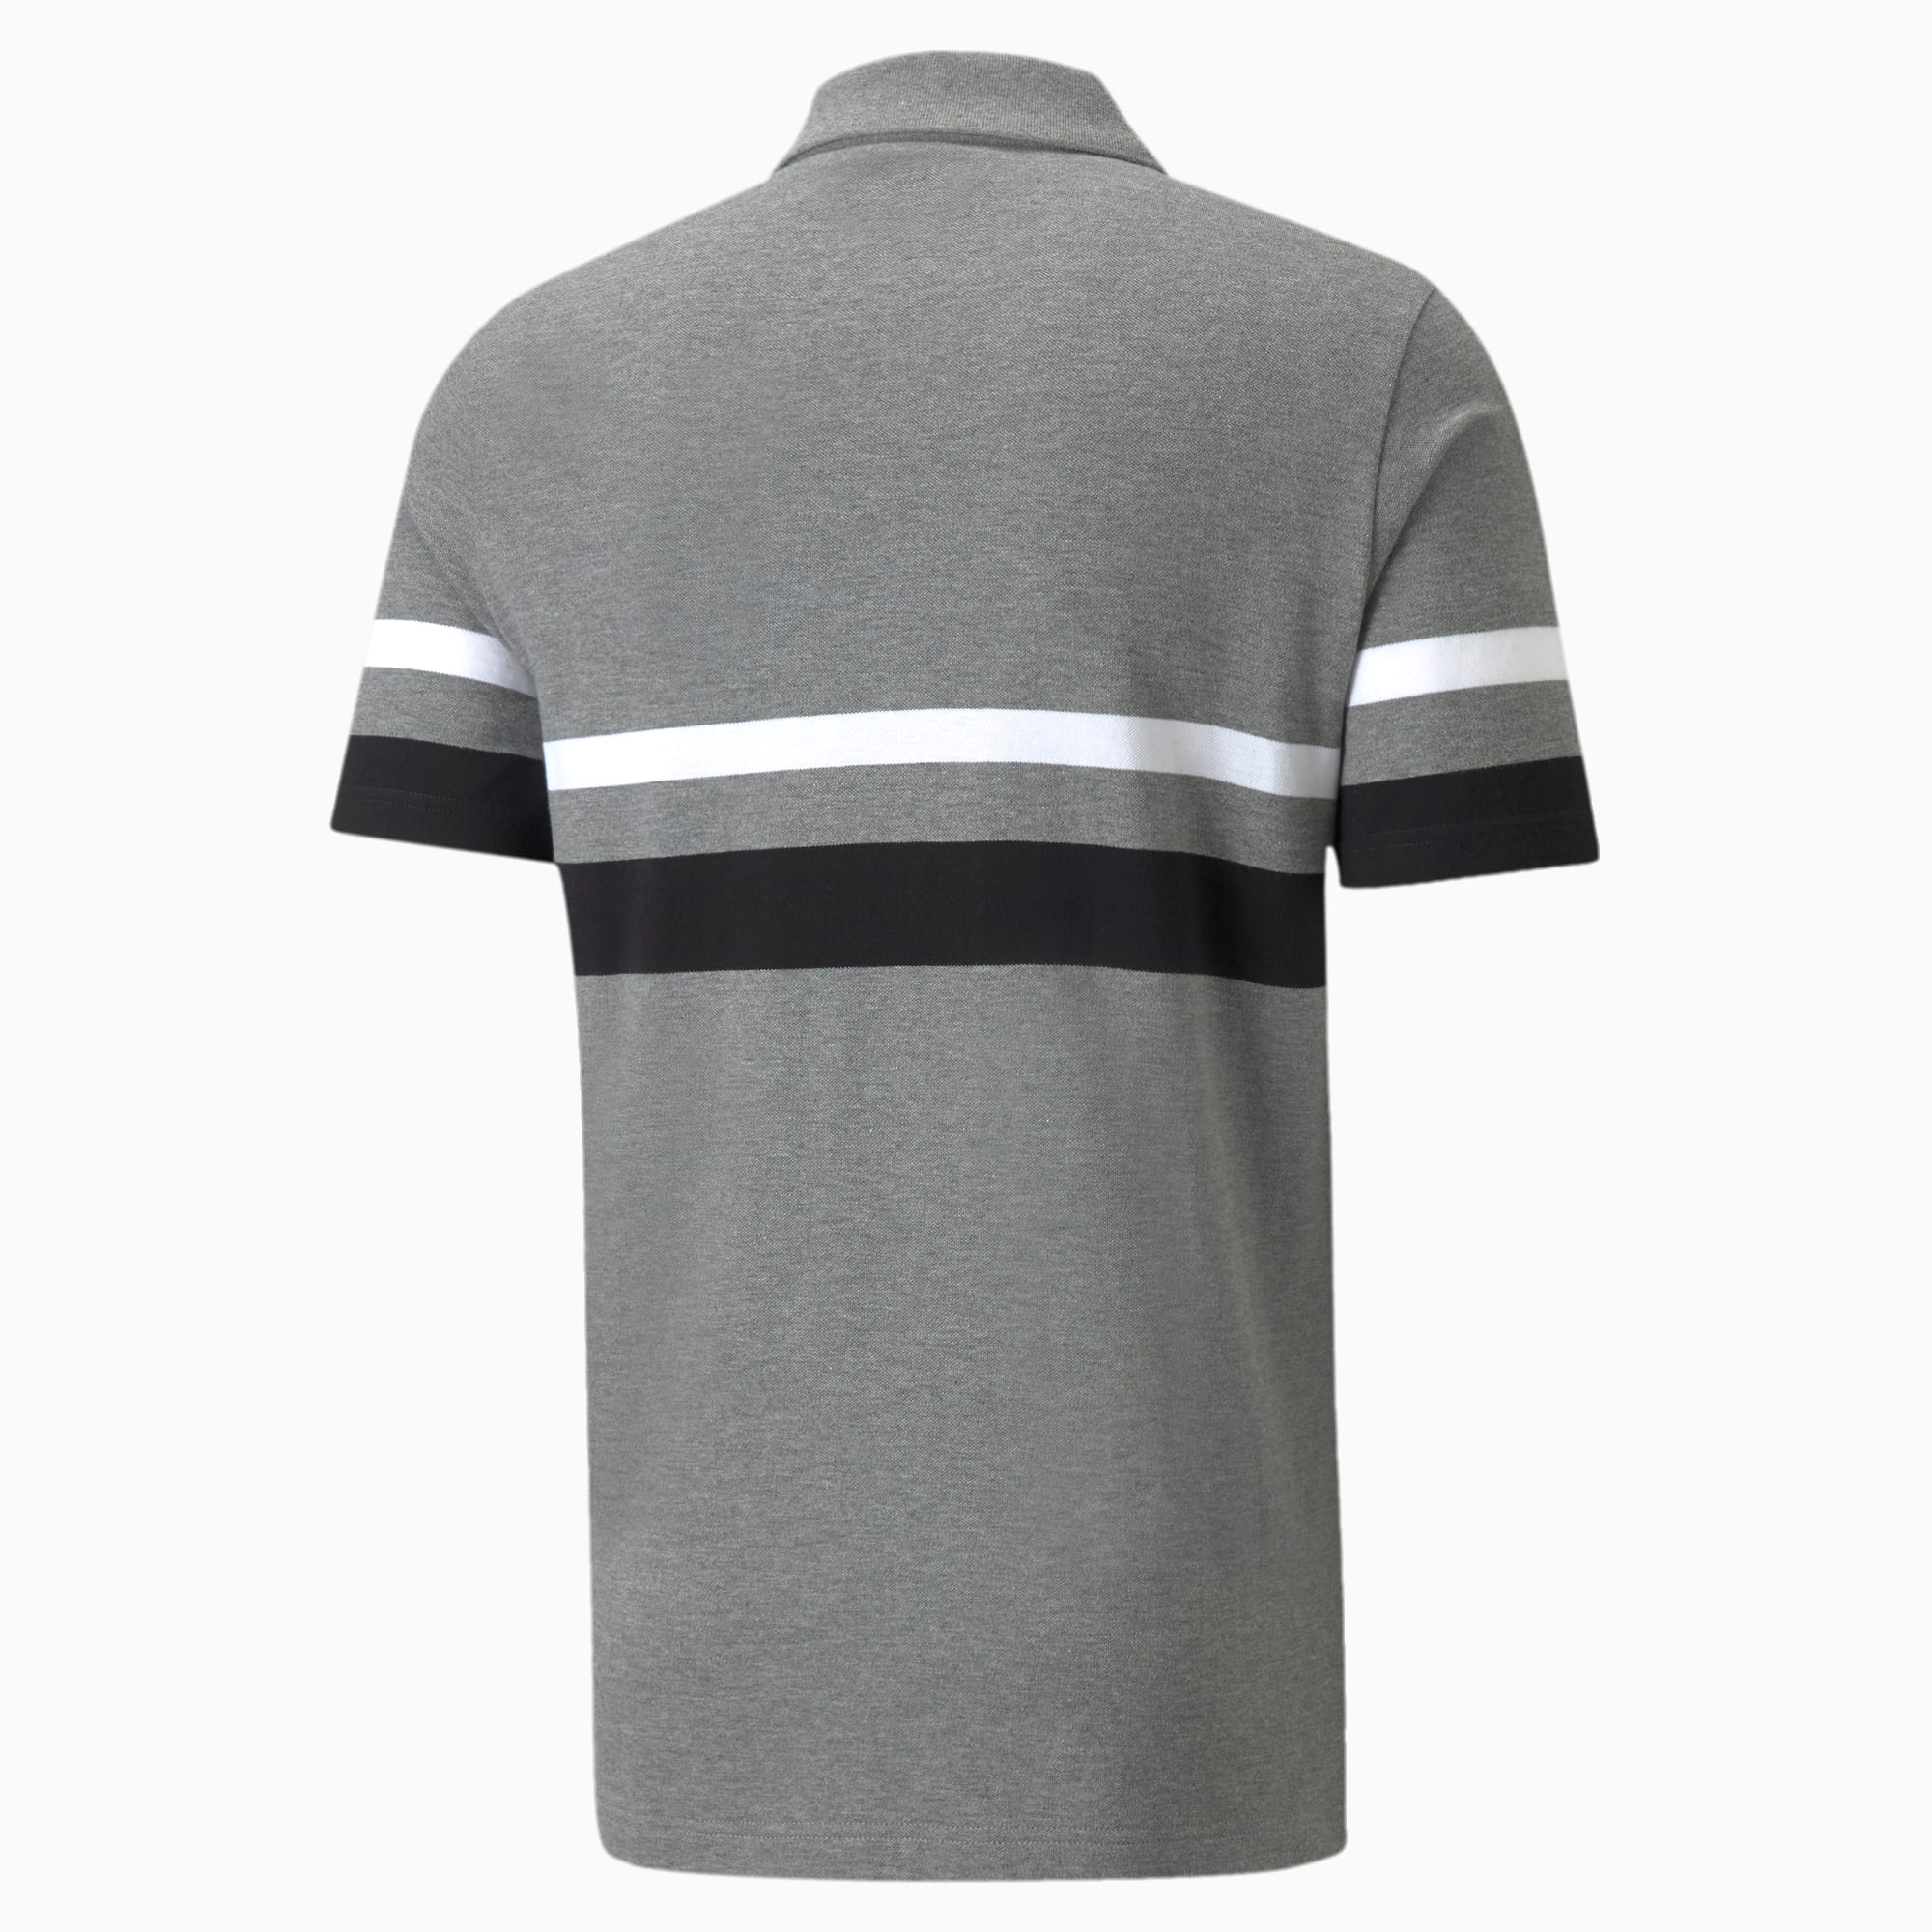 PUMA Essentials Stripe Men's Polo Shirt, Medium Grey Heather, Size XL, Clothing